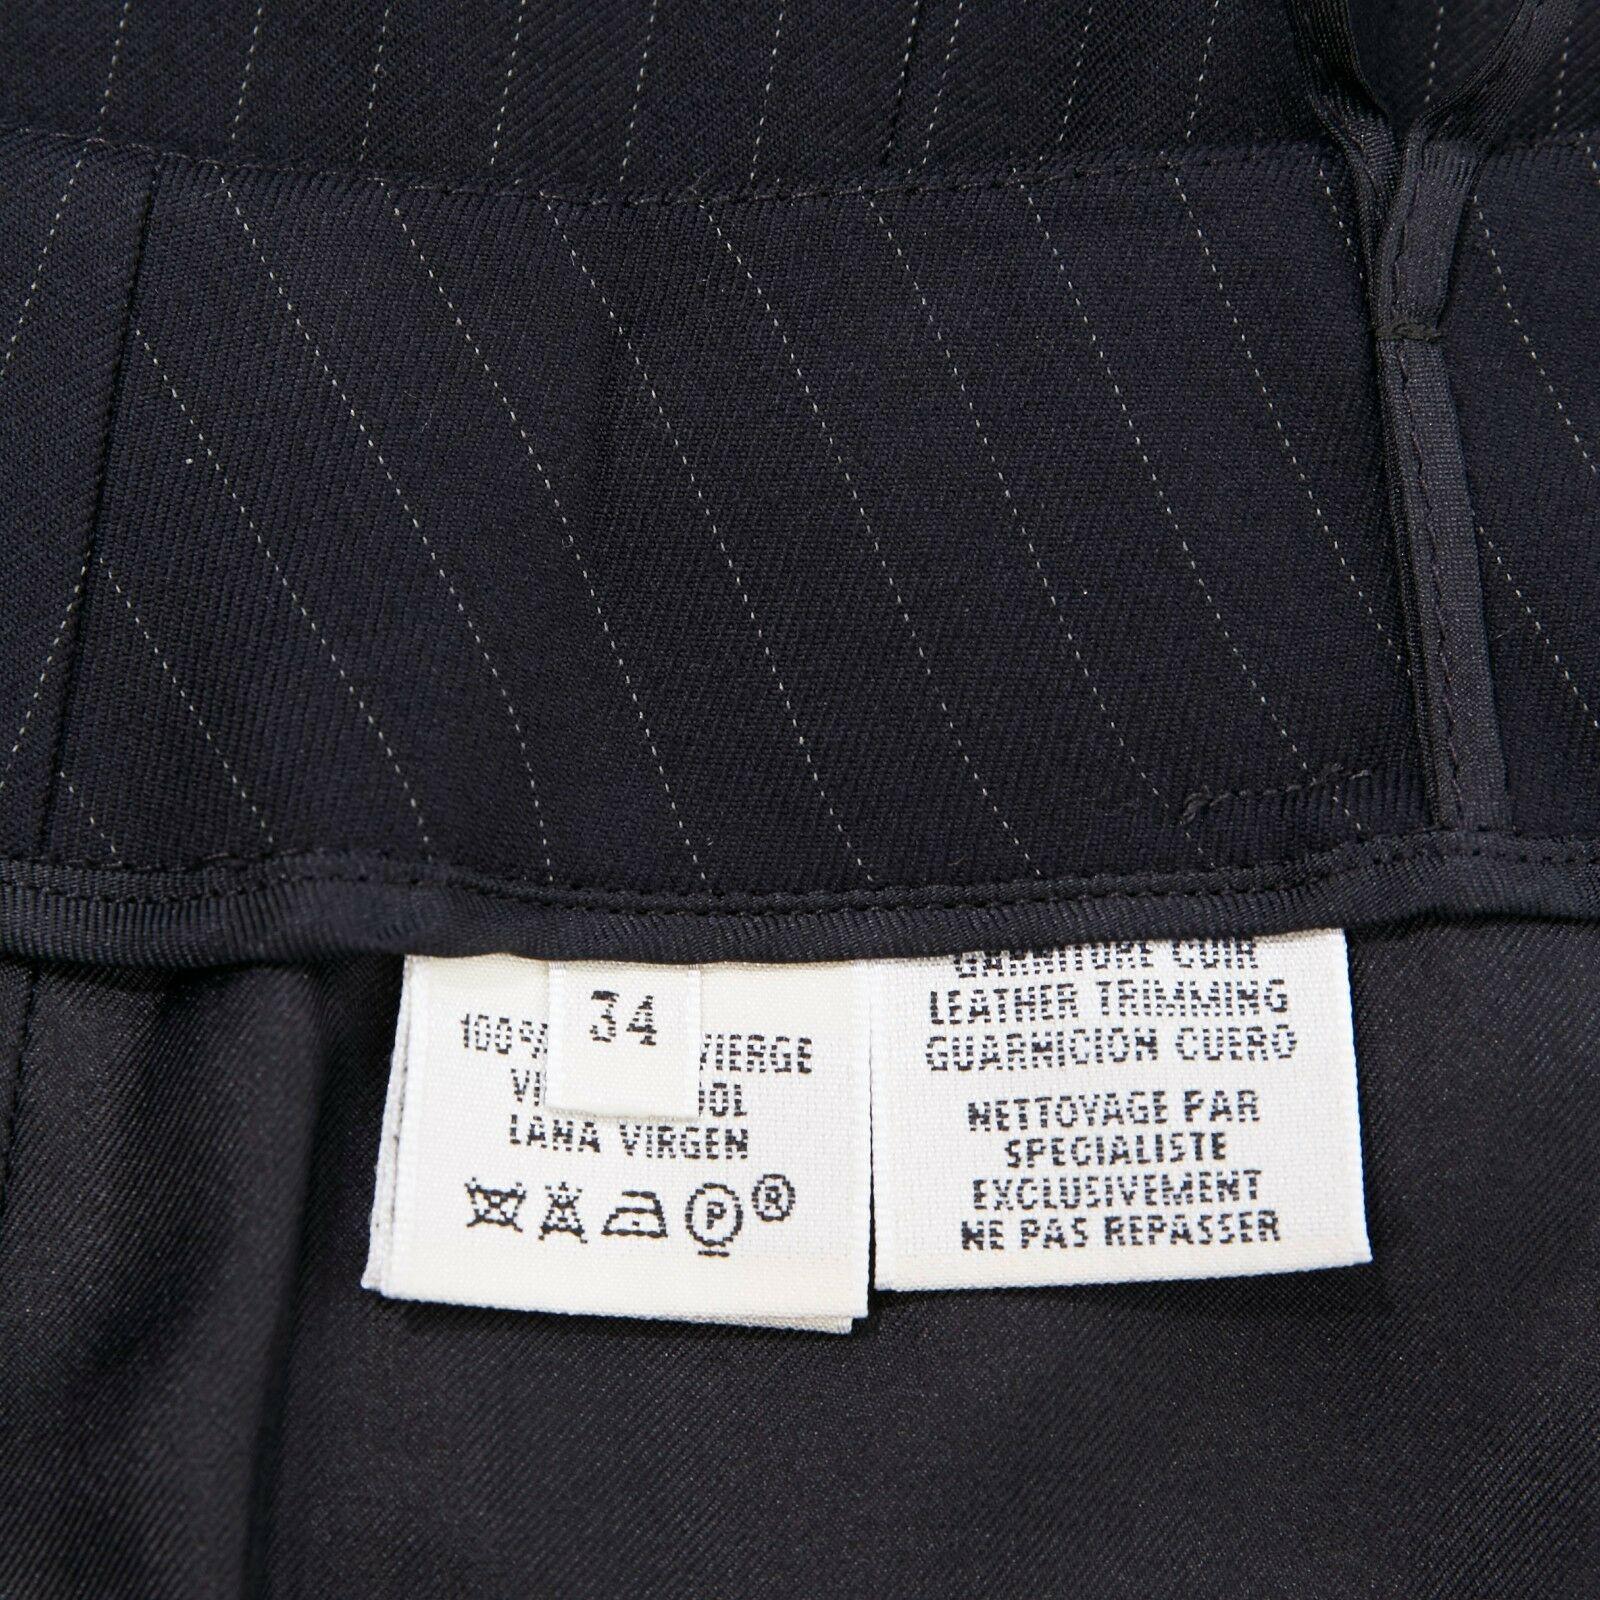 HERMES navy pinstripe virgin wool brown leather buckle wrap front skirt FR34 27